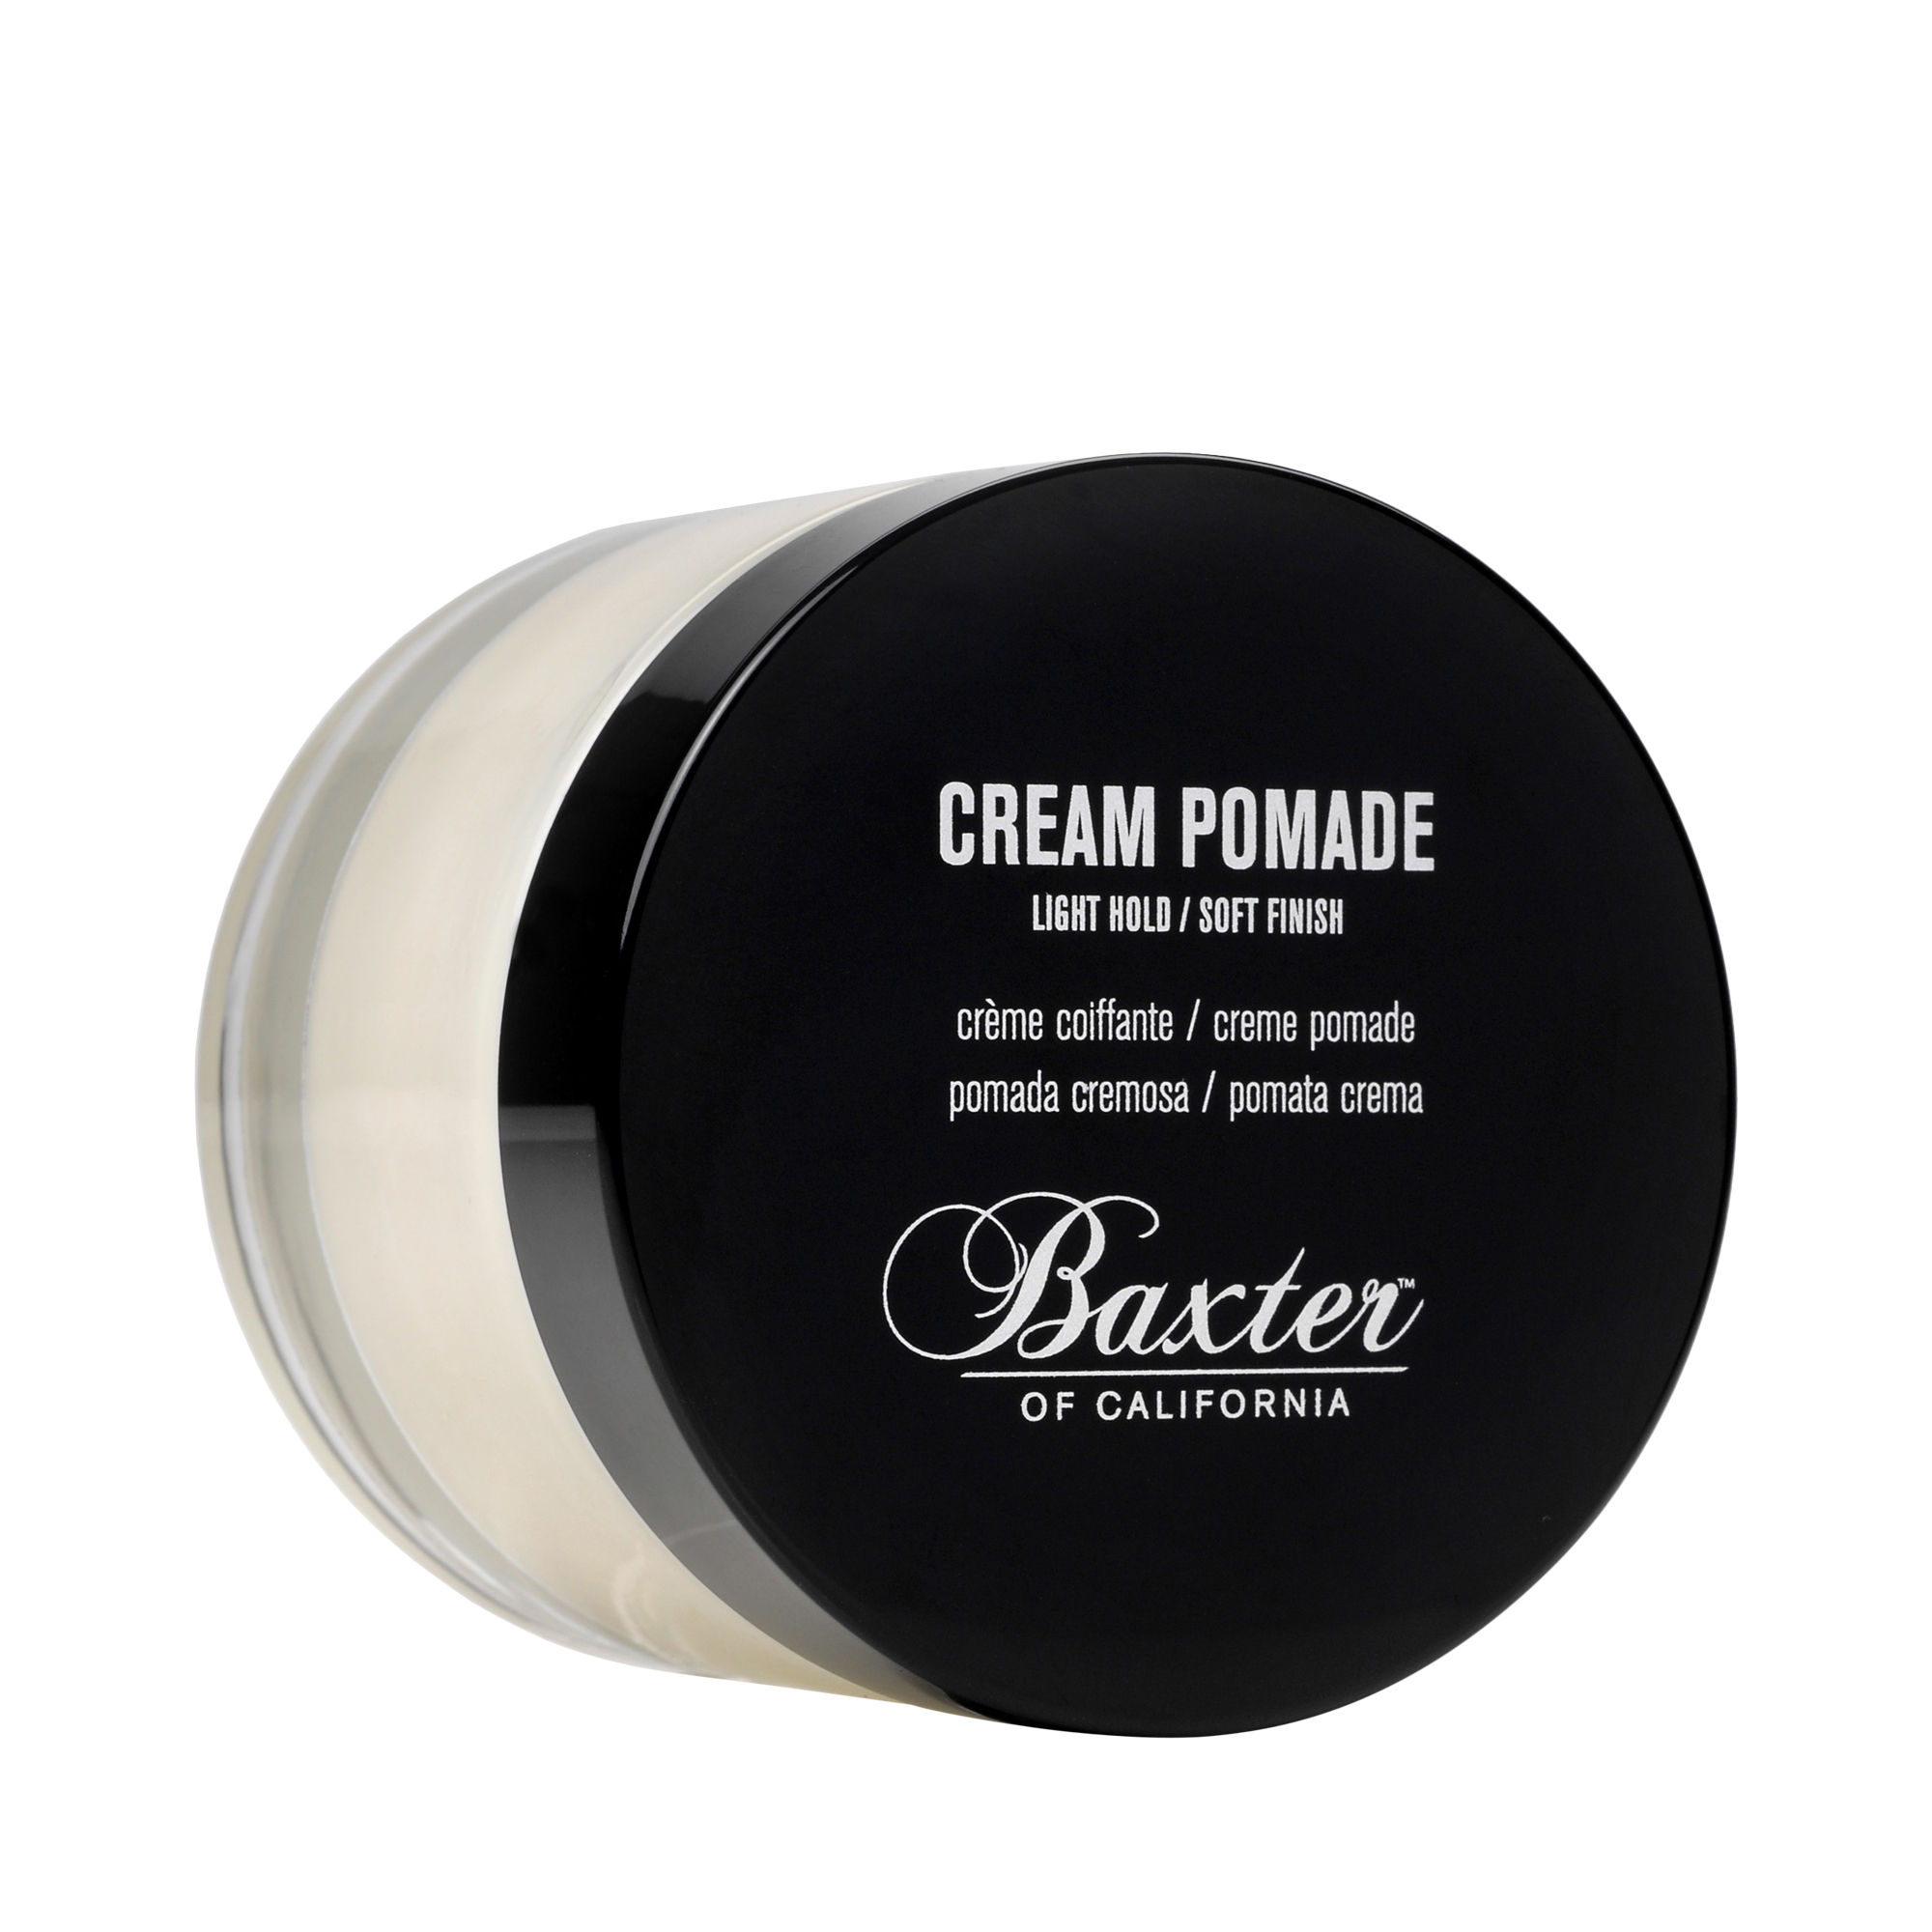 Baxter of California - Cream Pomade Haarcreme - leichter Halt, natürliches Finish